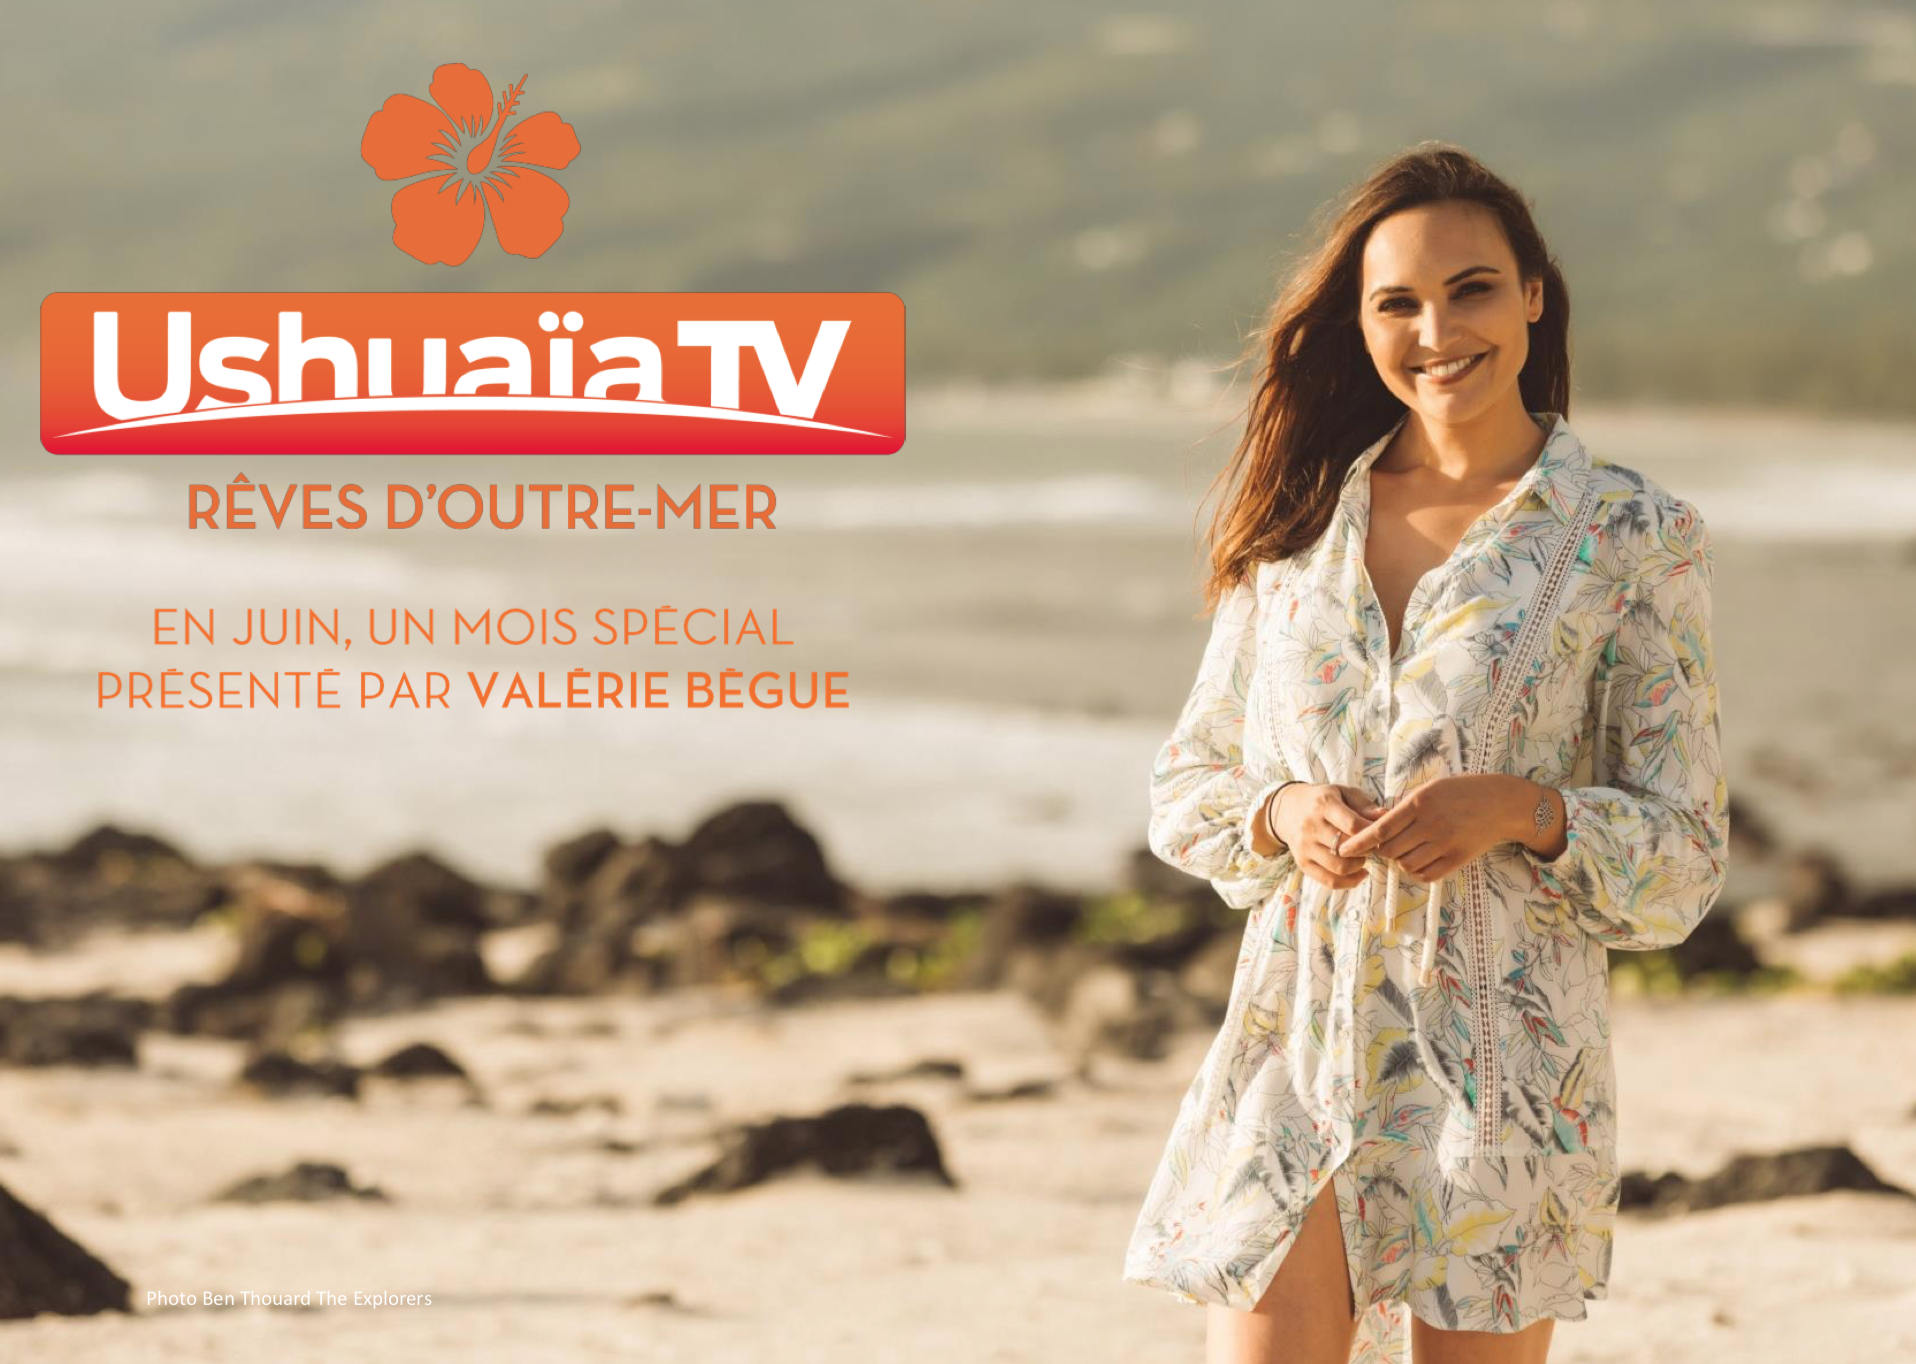 Télévision : La chaîne Ushuaïa lance une collection spéciale « Outre-mer » au mois de juin